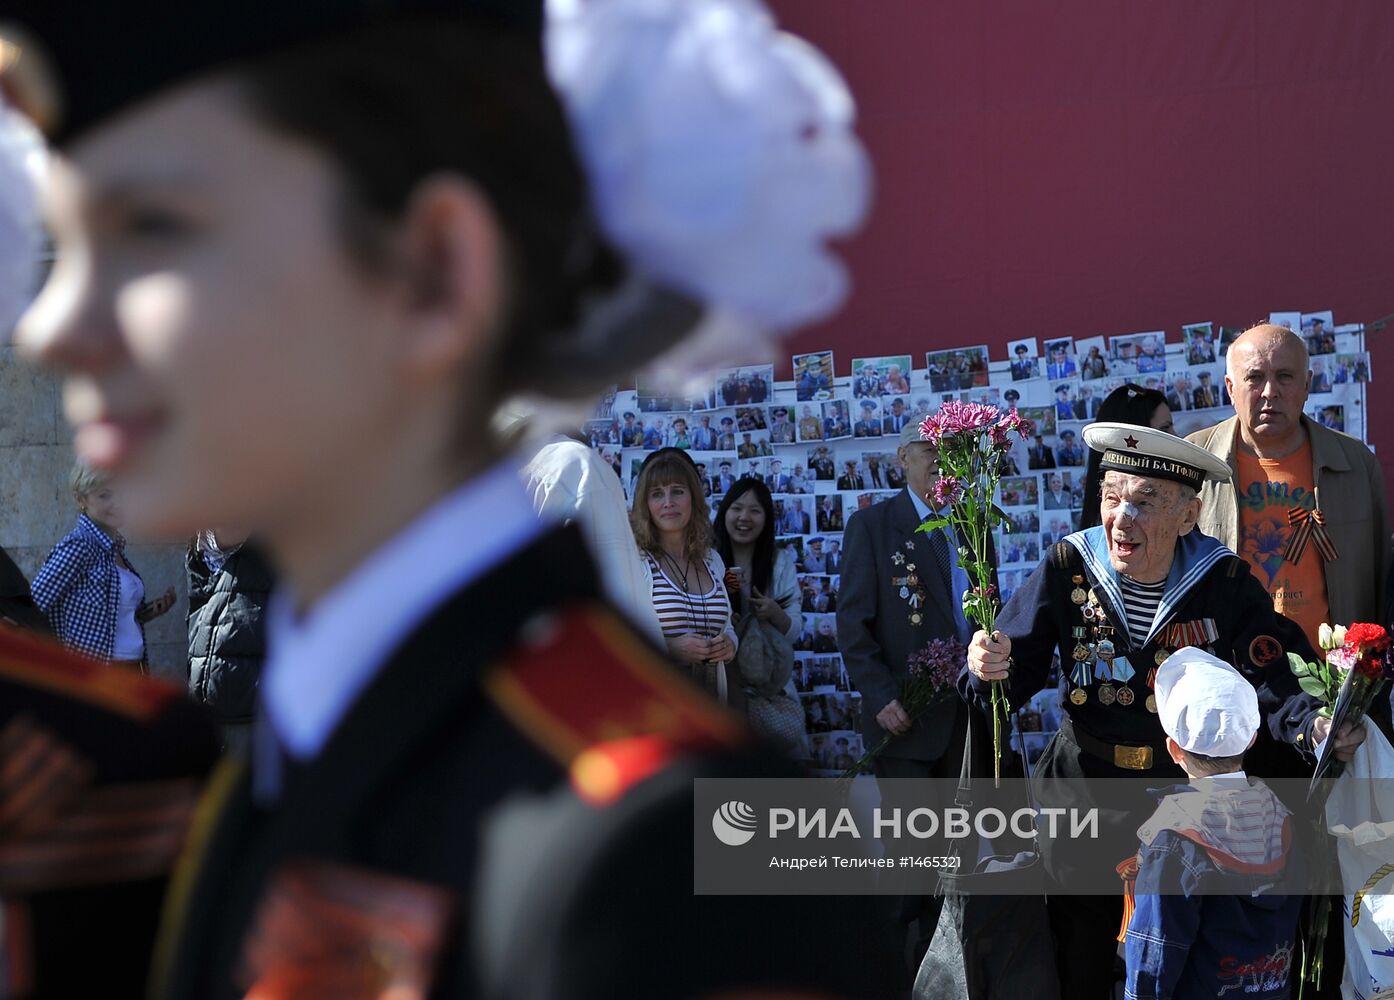 Празднование Дня Победы в Москве